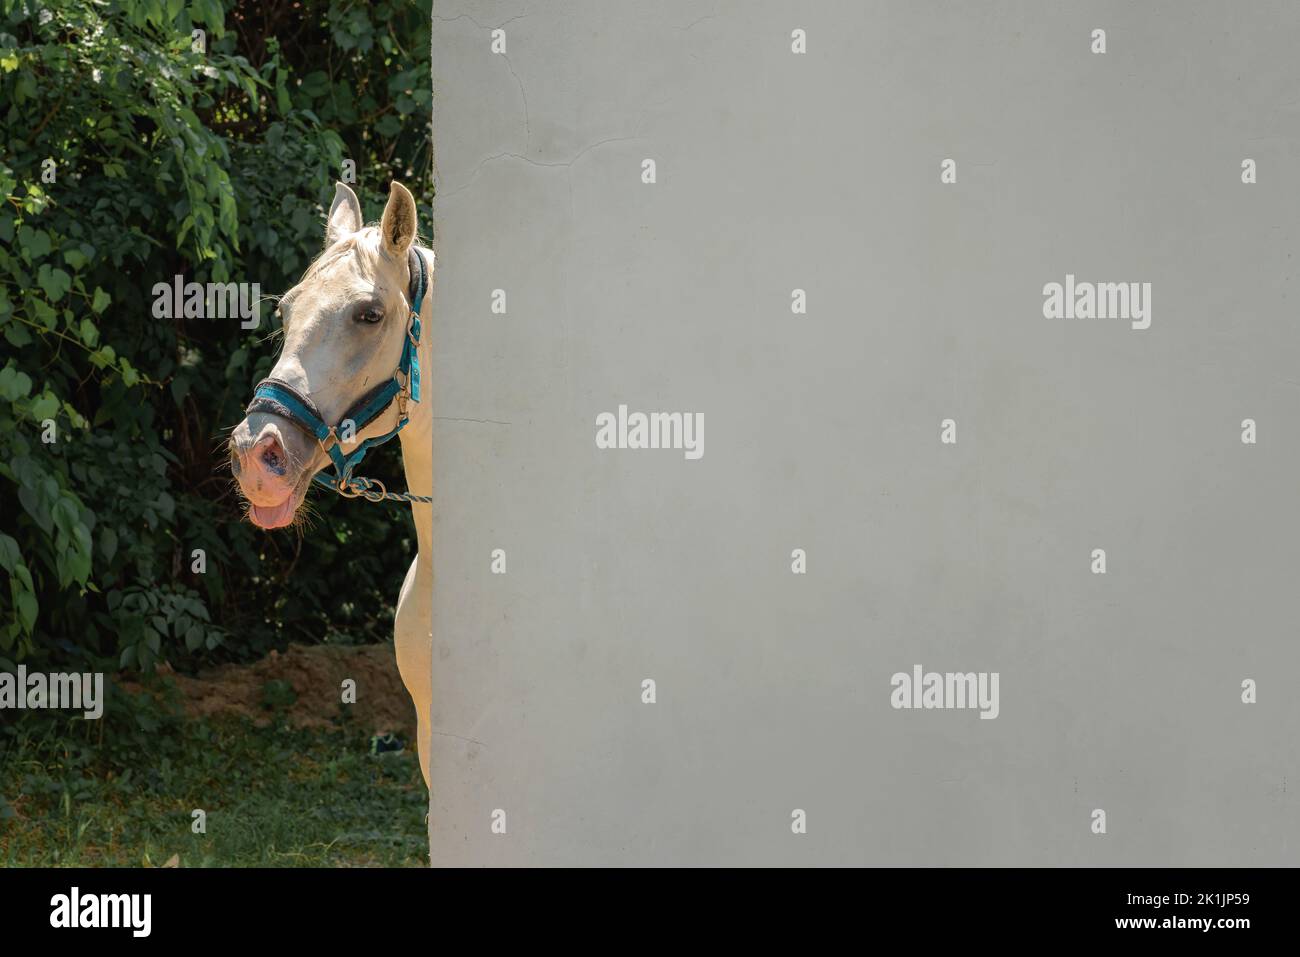 Un cheval blanc qui regarde derrière le mur et regarde l'appareil photo Banque D'Images